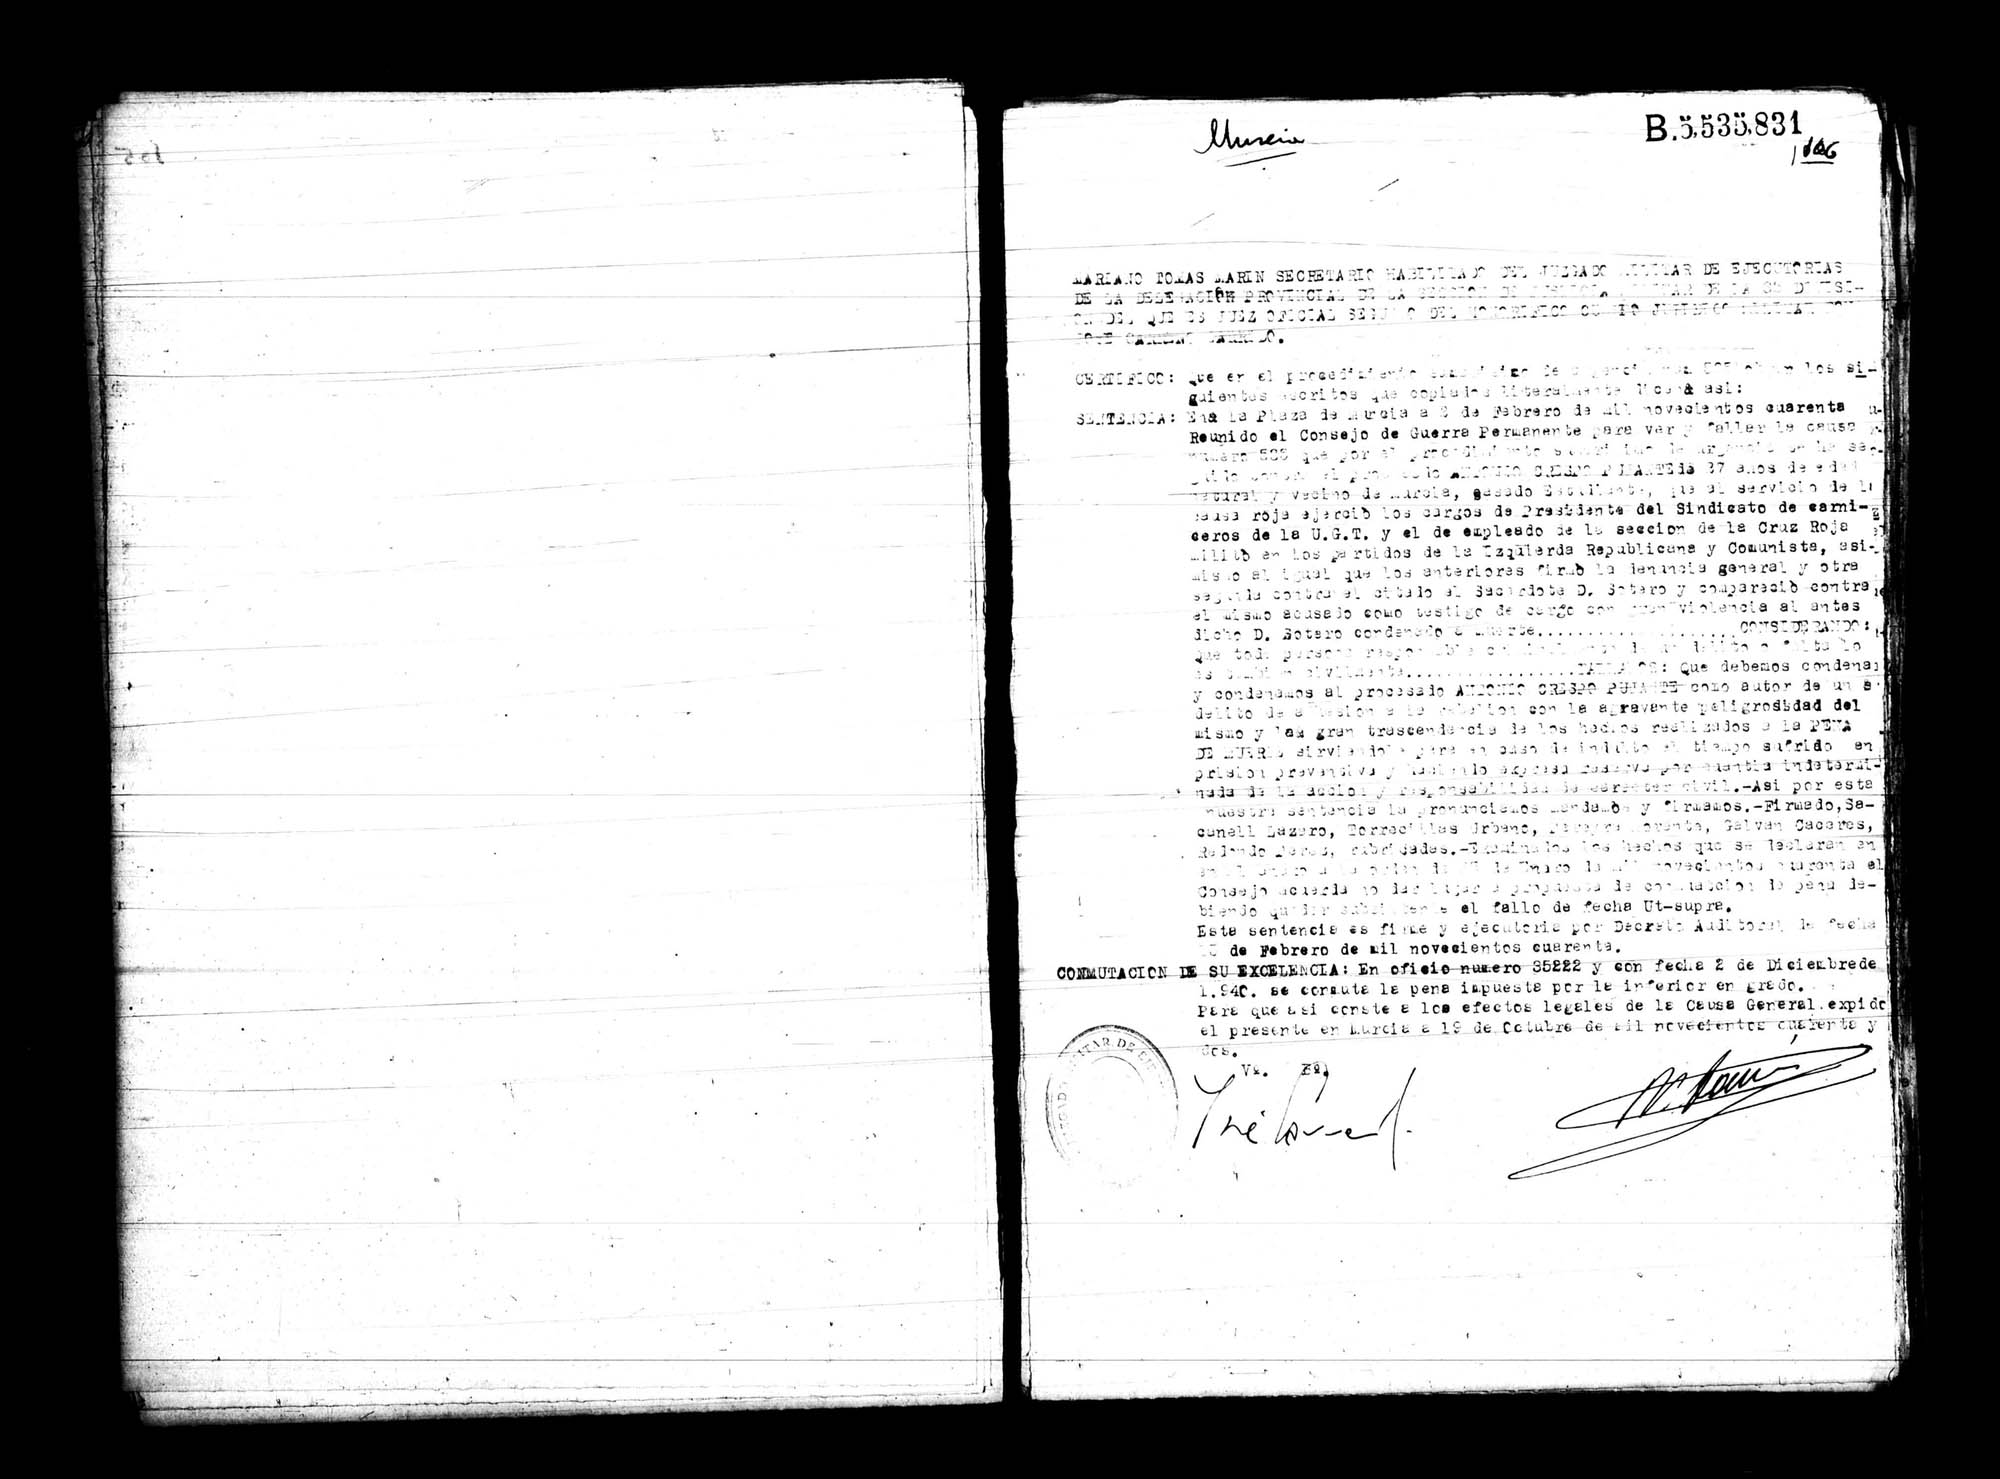 Certificado de la sentencia pronunciada contra Antonio Crespo Pujante, causa 535, el 2 de febrero de 1940 en Murcia.